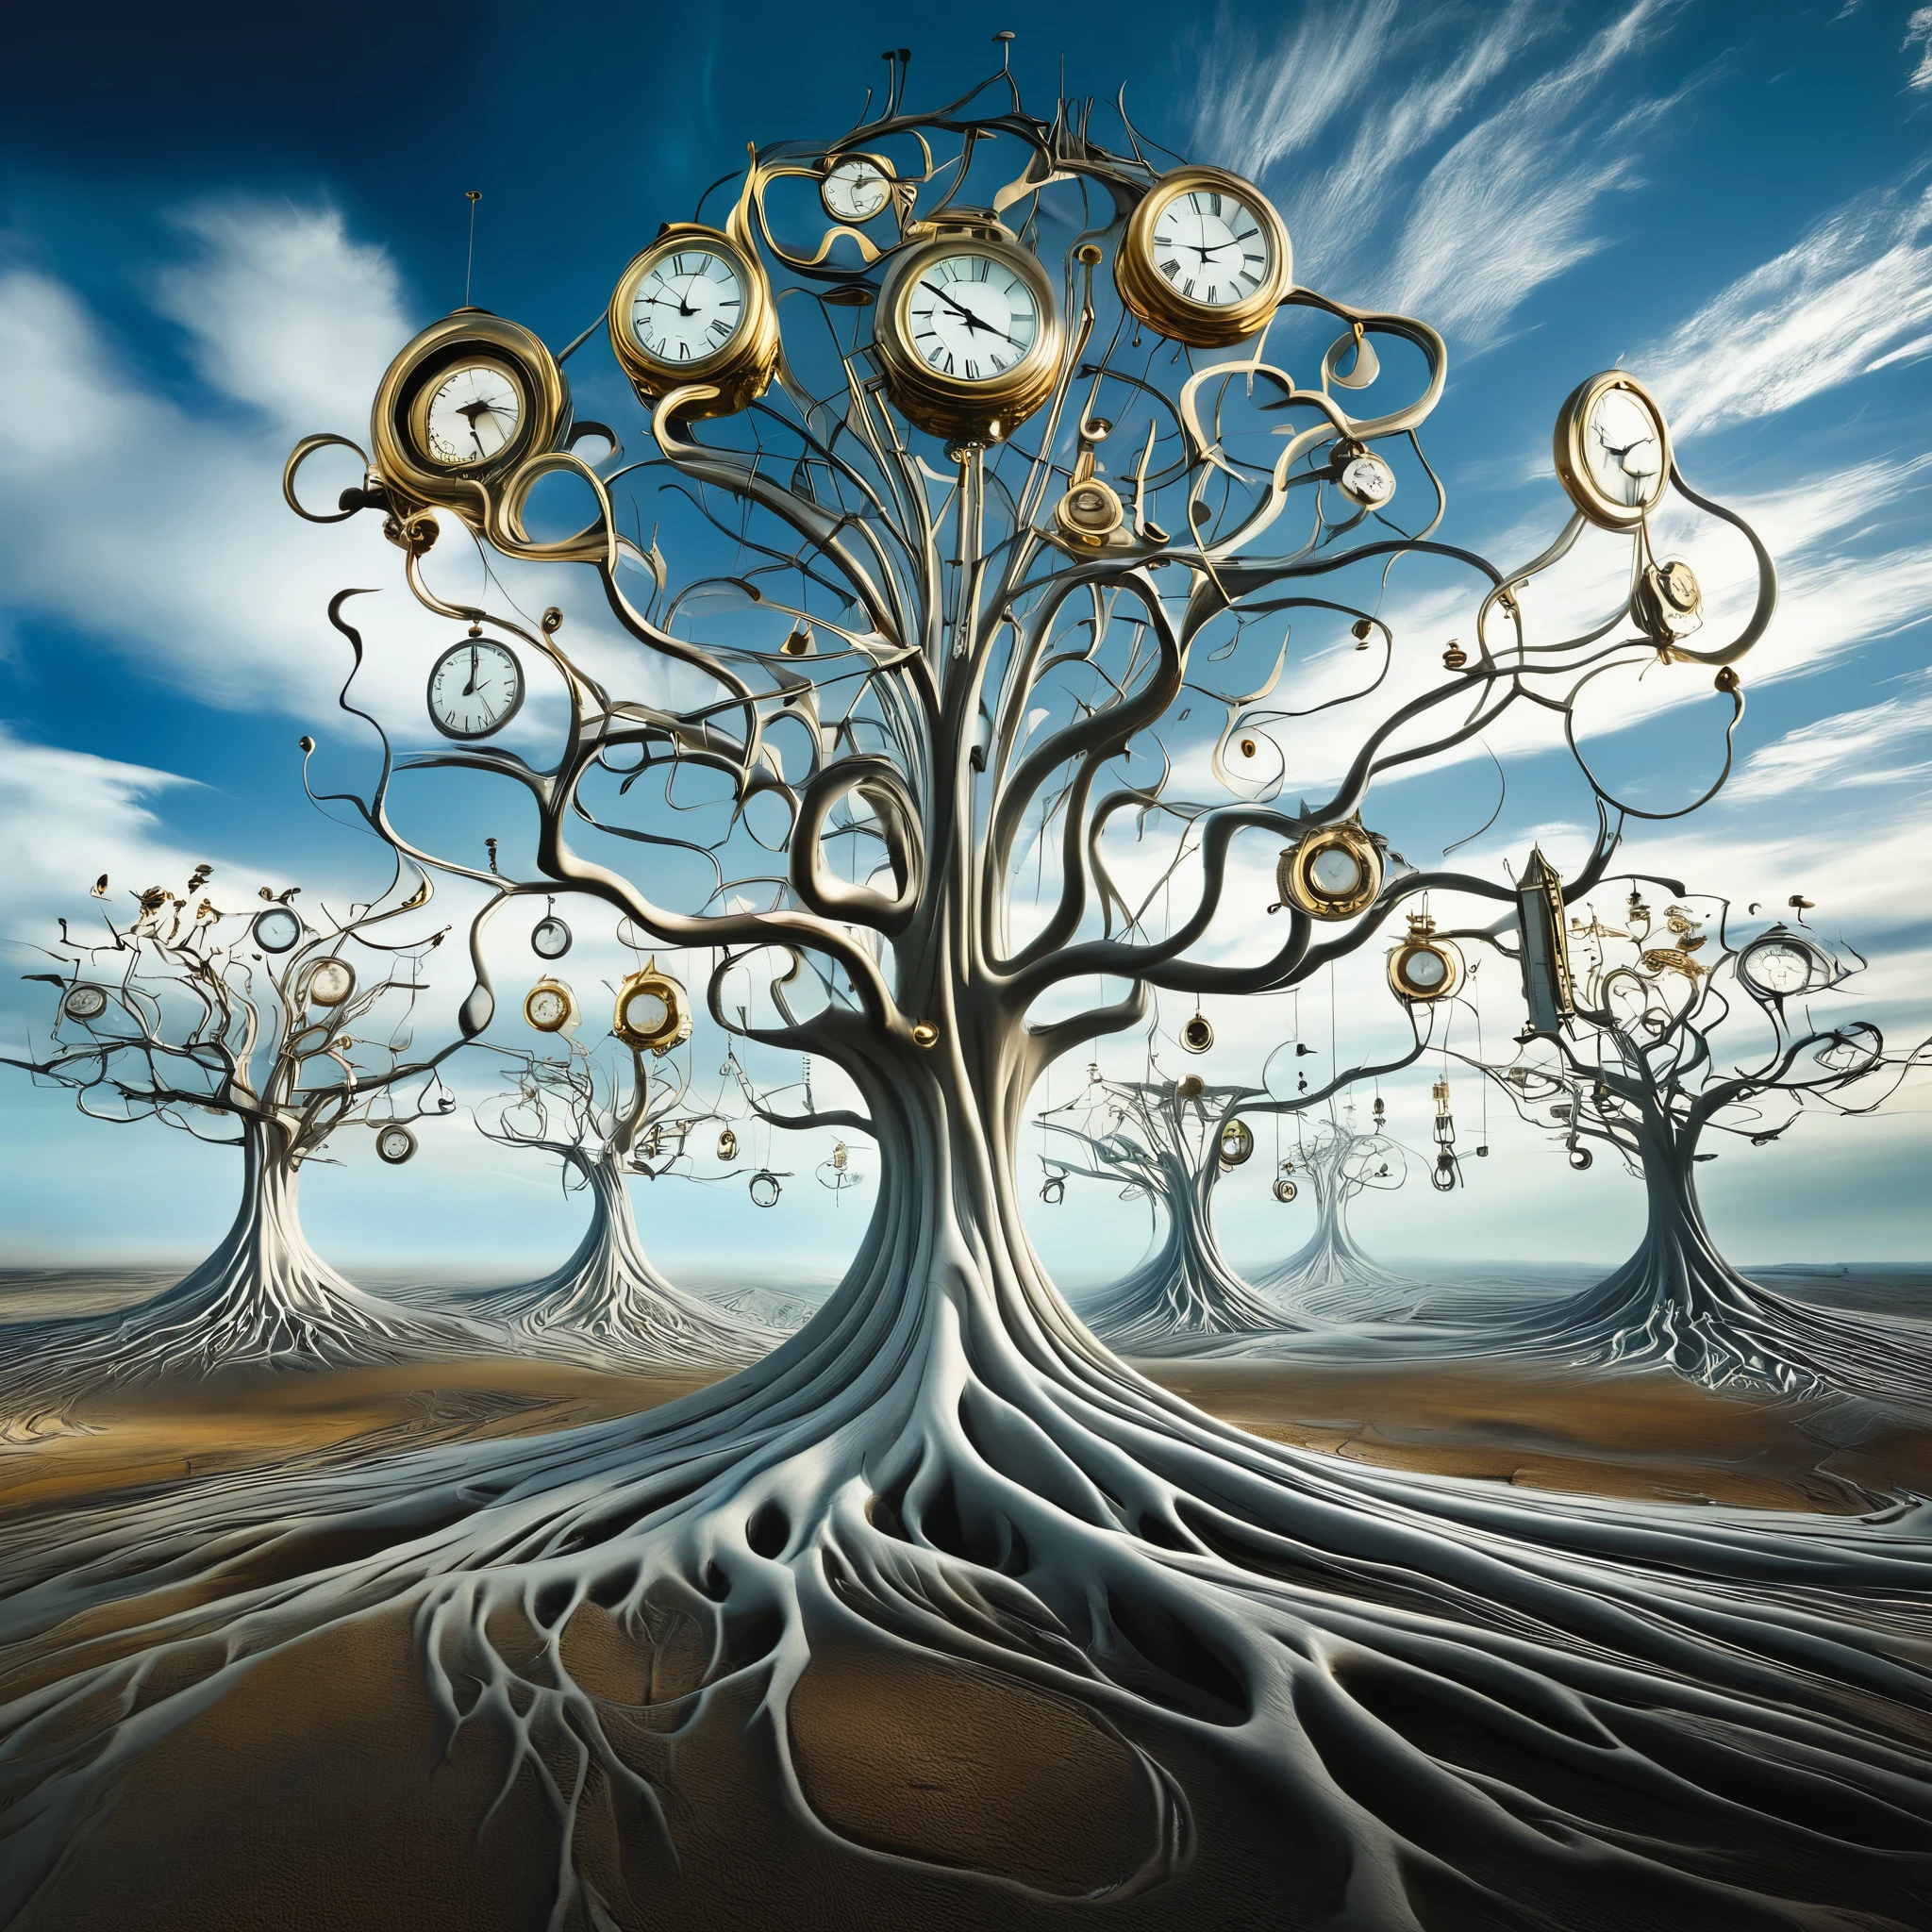 超现实主义, 萨尔瓦多达利风格的风景画，融化的时钟悬挂在光秃秃的树木上，漂浮在广阔的, 无尽的天空. 时钟代表时间的循环性, 它们的扭曲形状象征着感知的流动性.